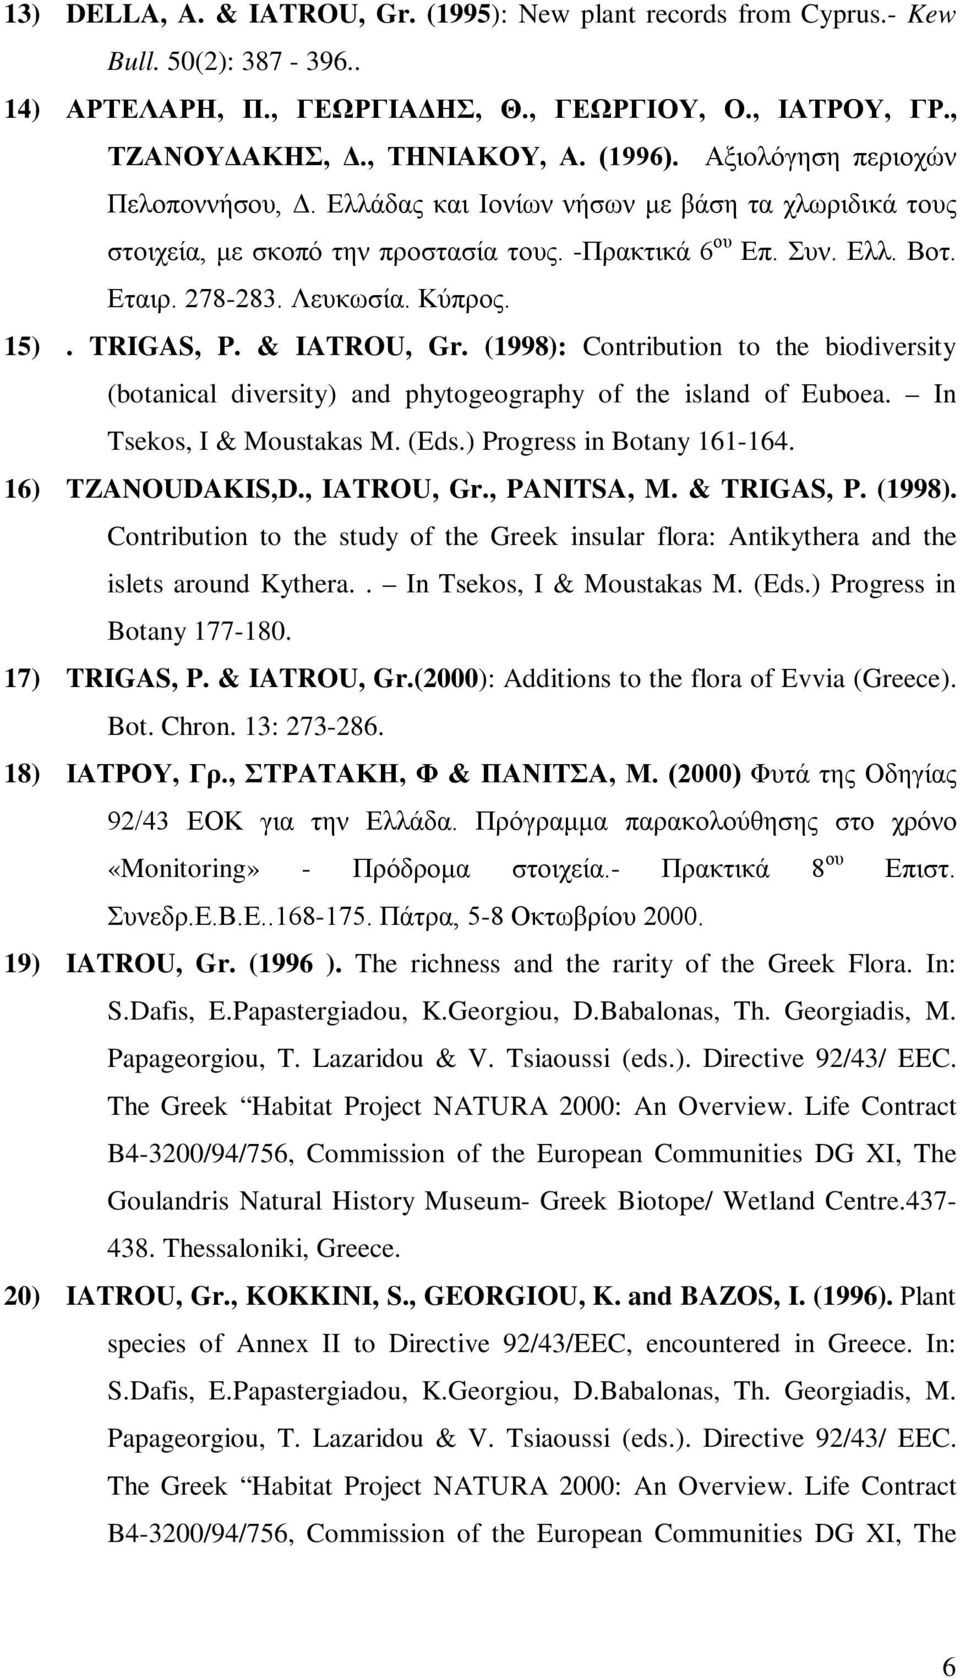 TRIGAS, P. & IATROU, Gr. (1998): Contribution to the biodiversity (botanical diversity) and phytogeography of the island of Euboea. In Tsekos, I & Moustakas M. (Eds.) Progress in Botany 161-164.